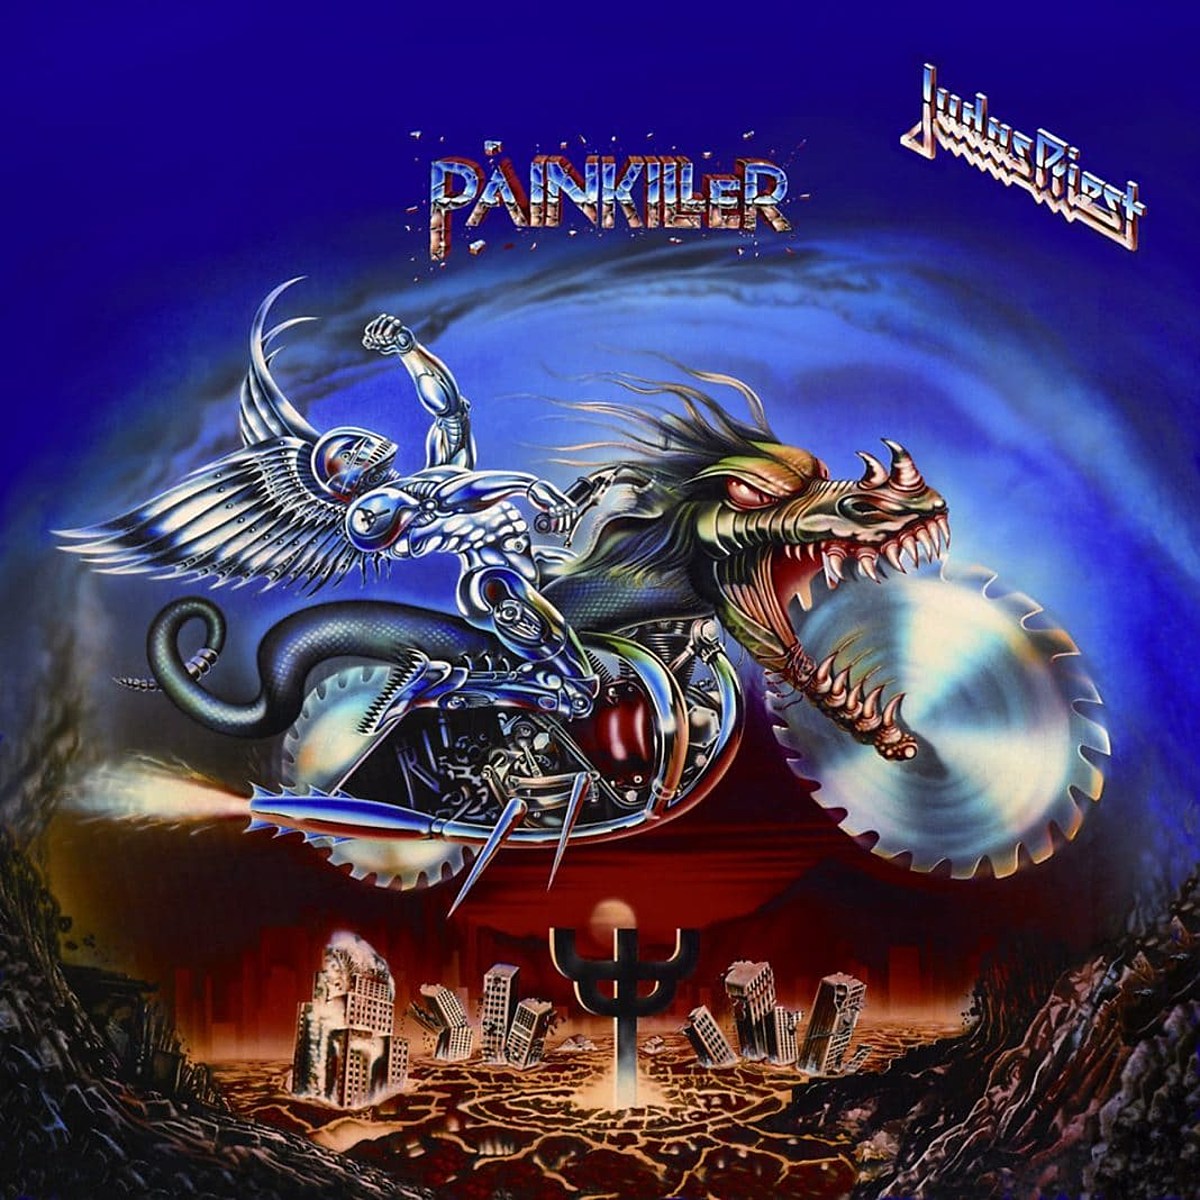 Judas Priest - Painkiller - Decibel Magazine